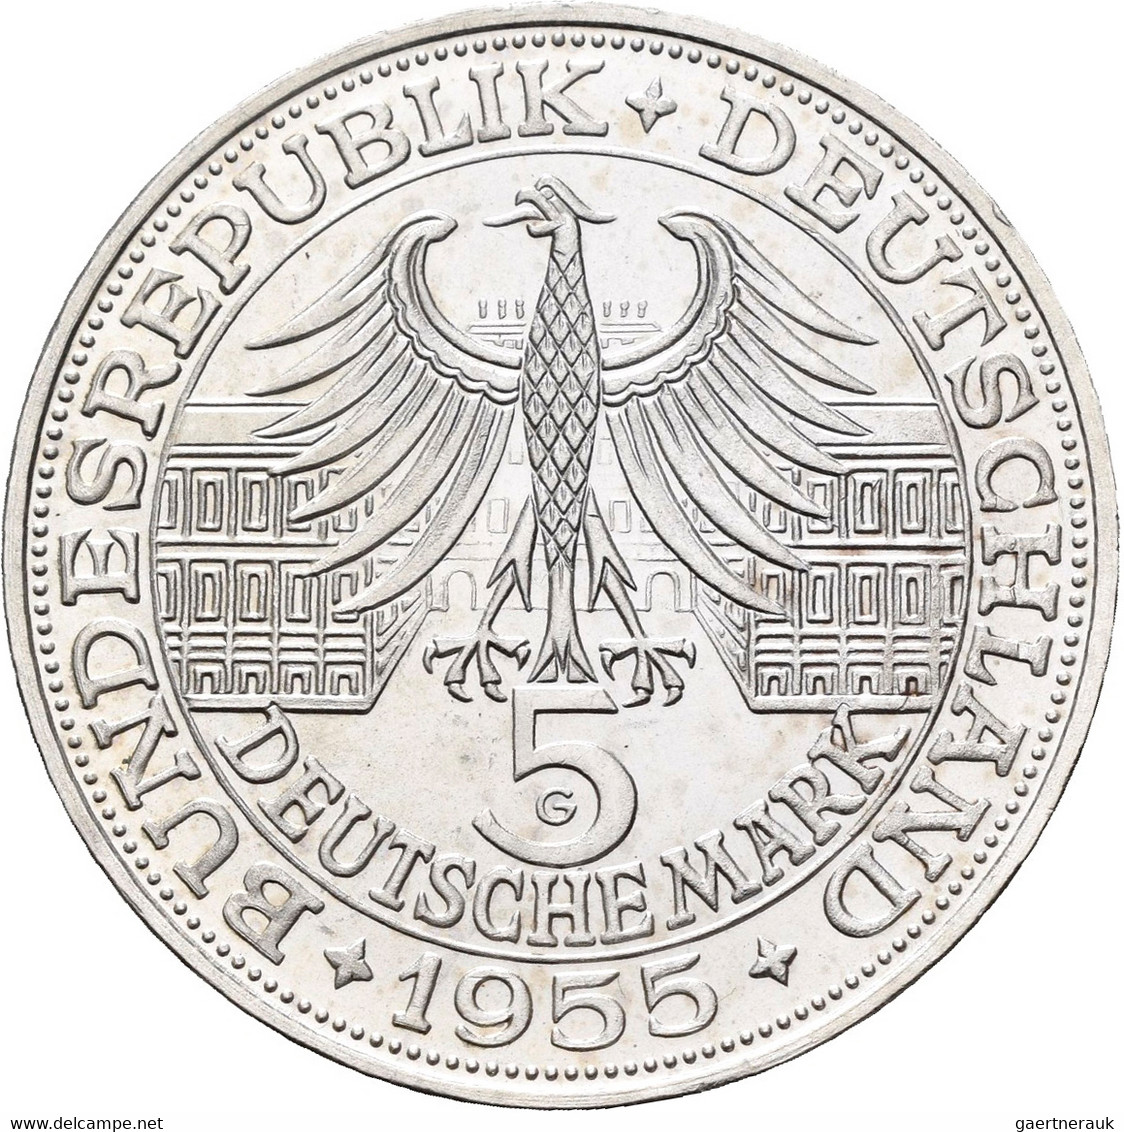 Bundesrepublik Deutschland 1948-2001: 1953-1986, Germanisches Museum bis Friedrich der Große, Sammlu